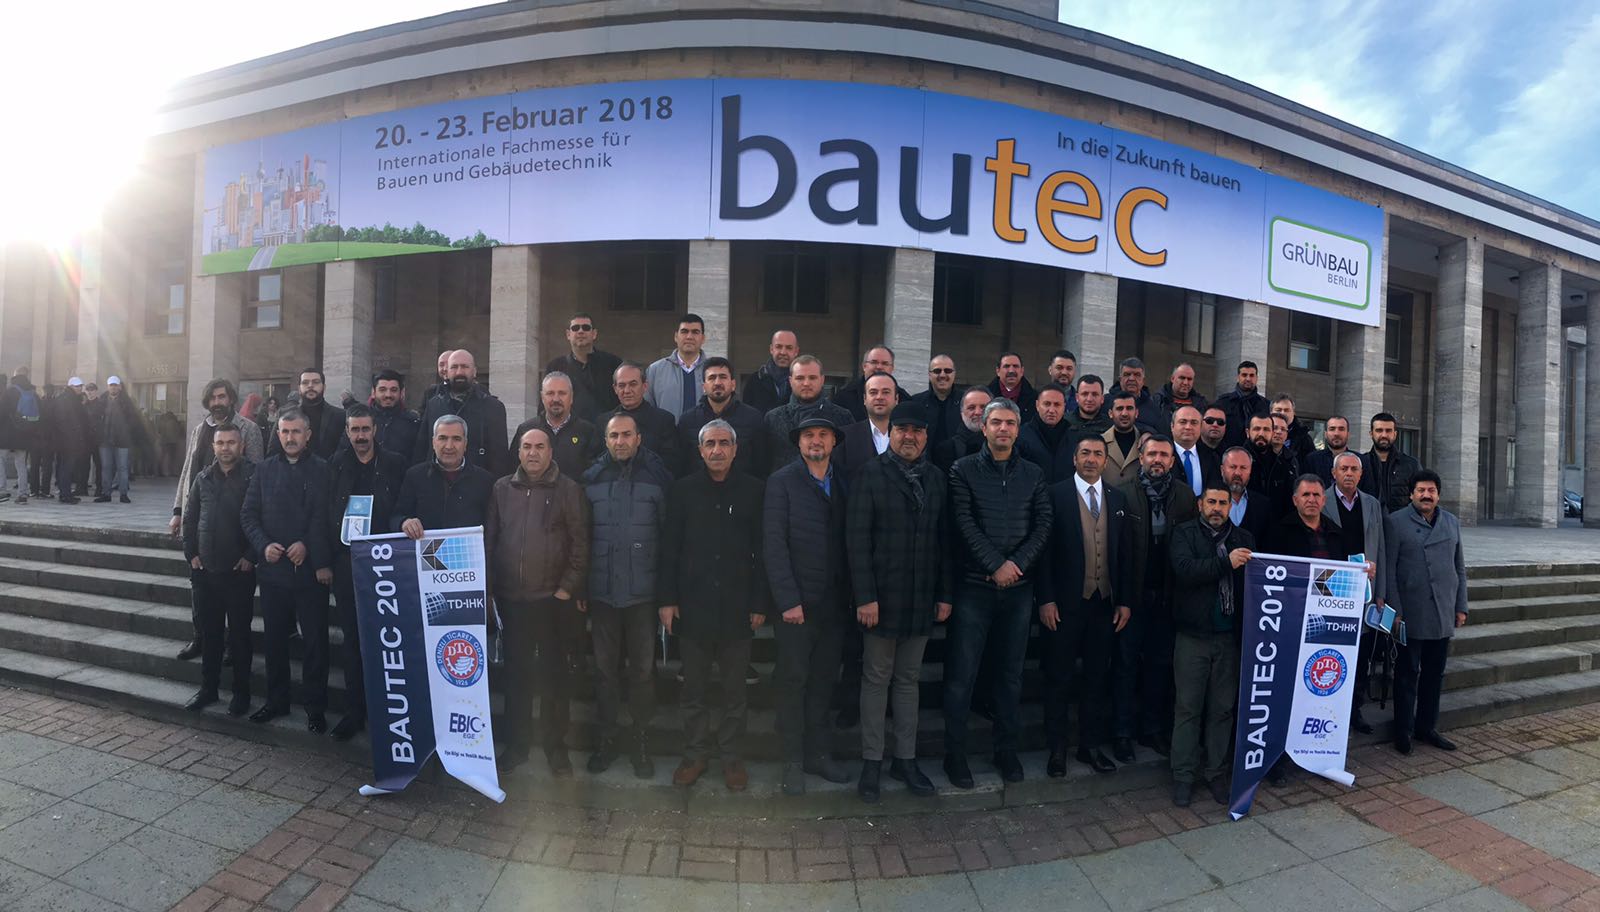 Bautec Berlin’de yeni teknoloji ürünler ile sistemleri incelediler